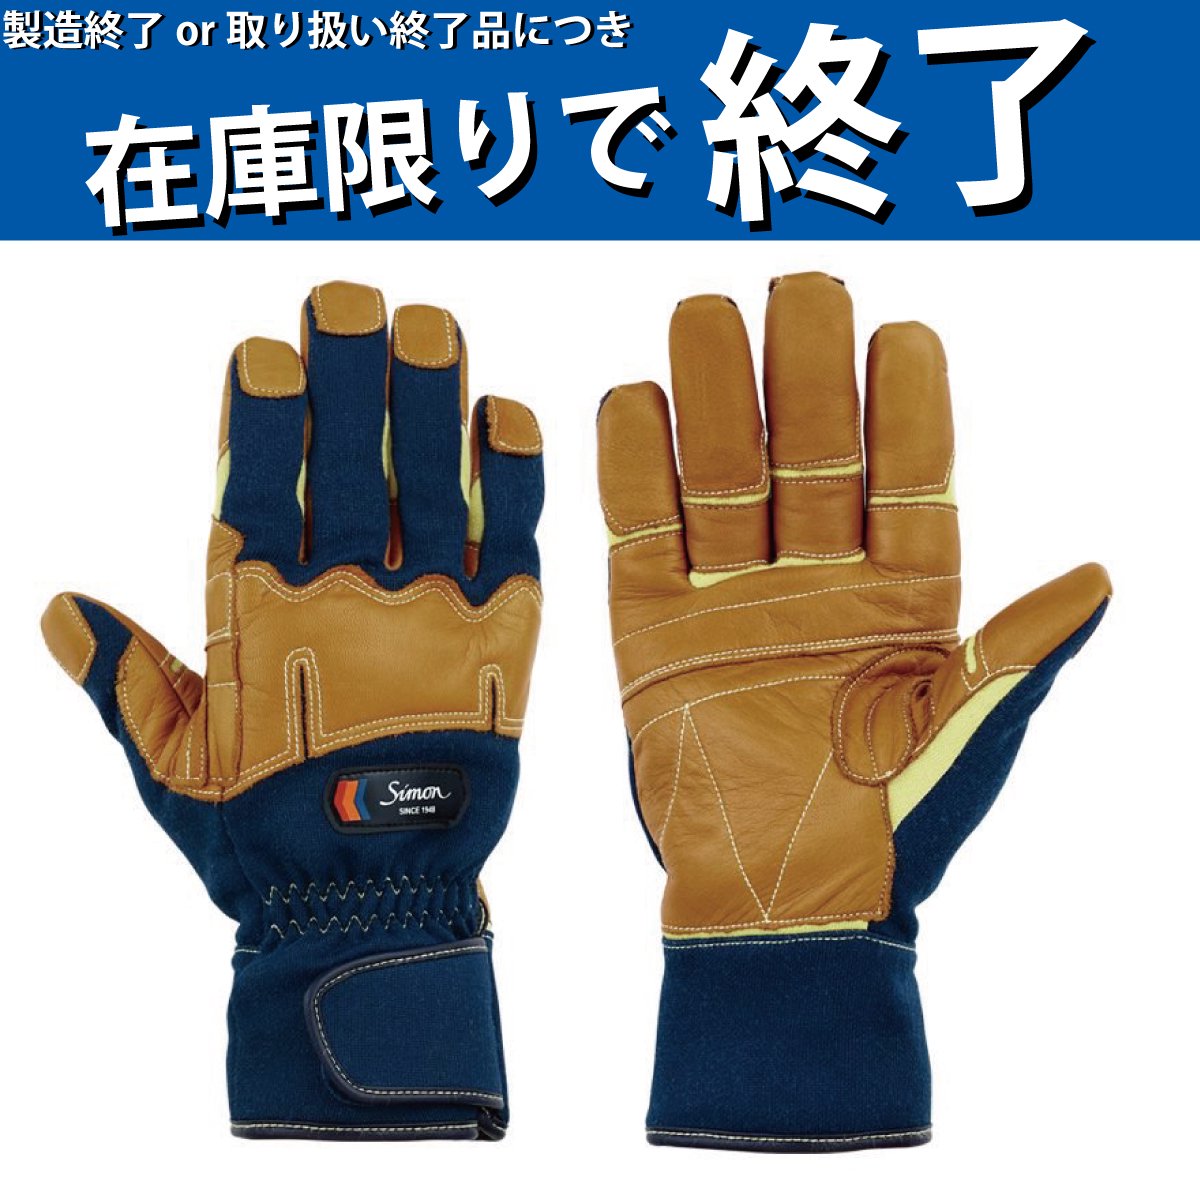 シモン 災害活動用保護手袋(アラミド繊維手袋) KG-180 3L KG-180-3L - 2